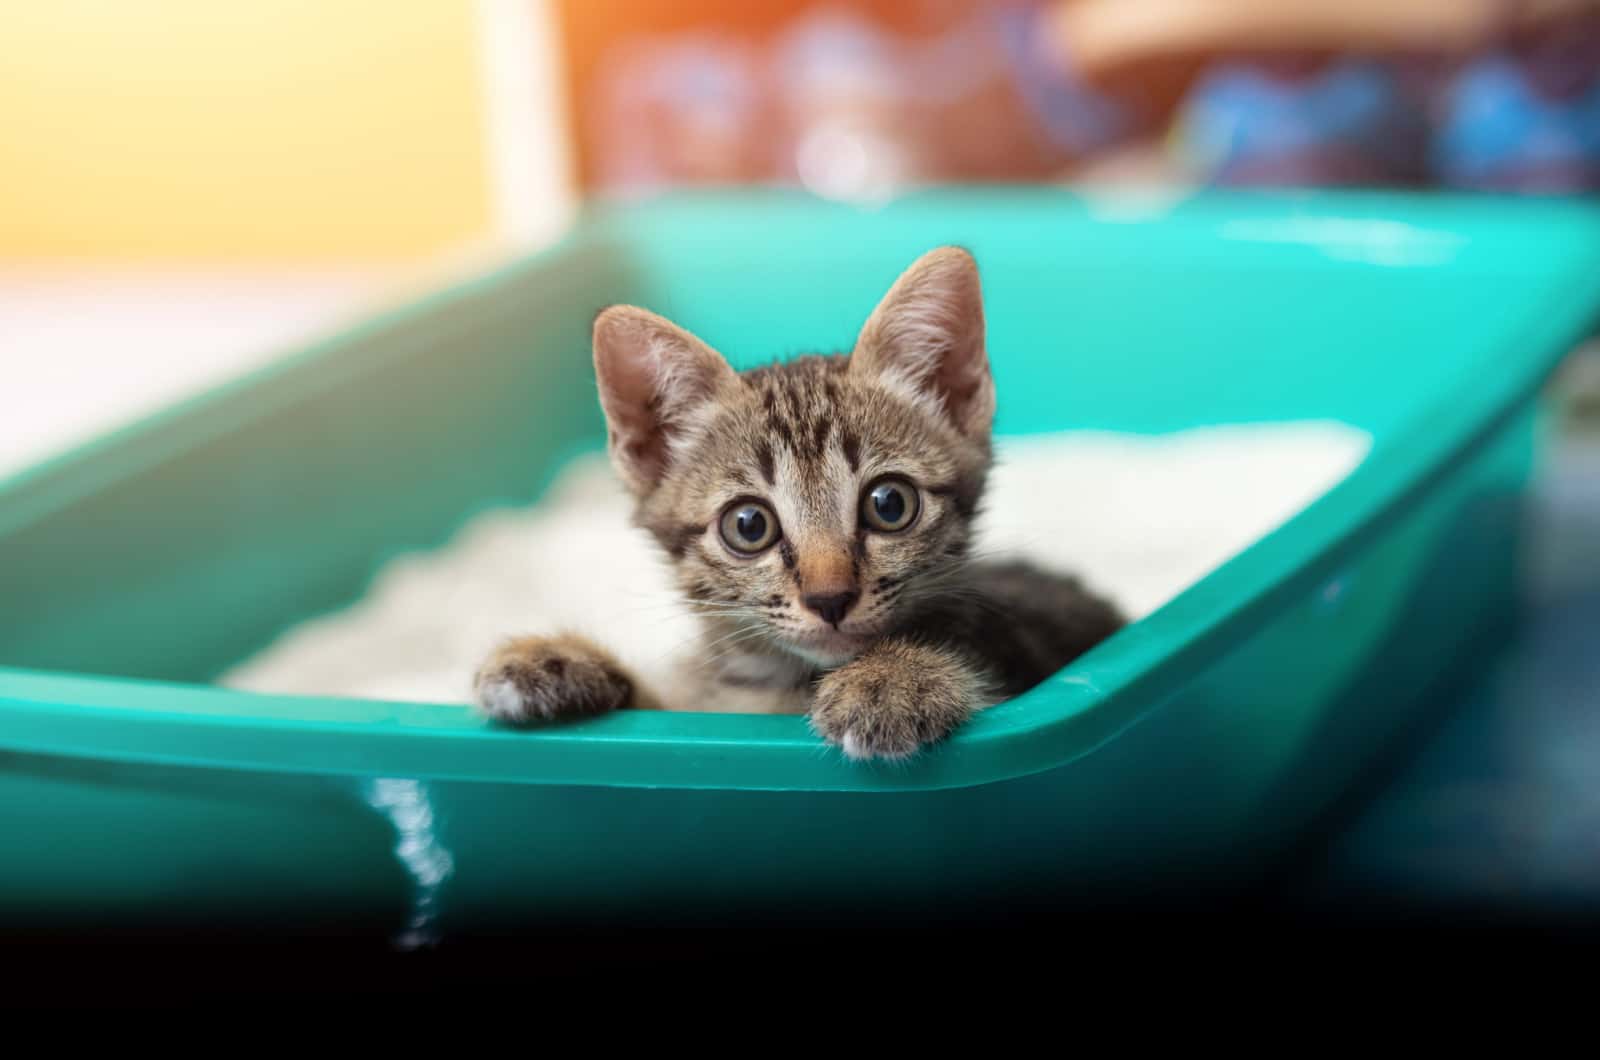 small tabby kitten using a litter box